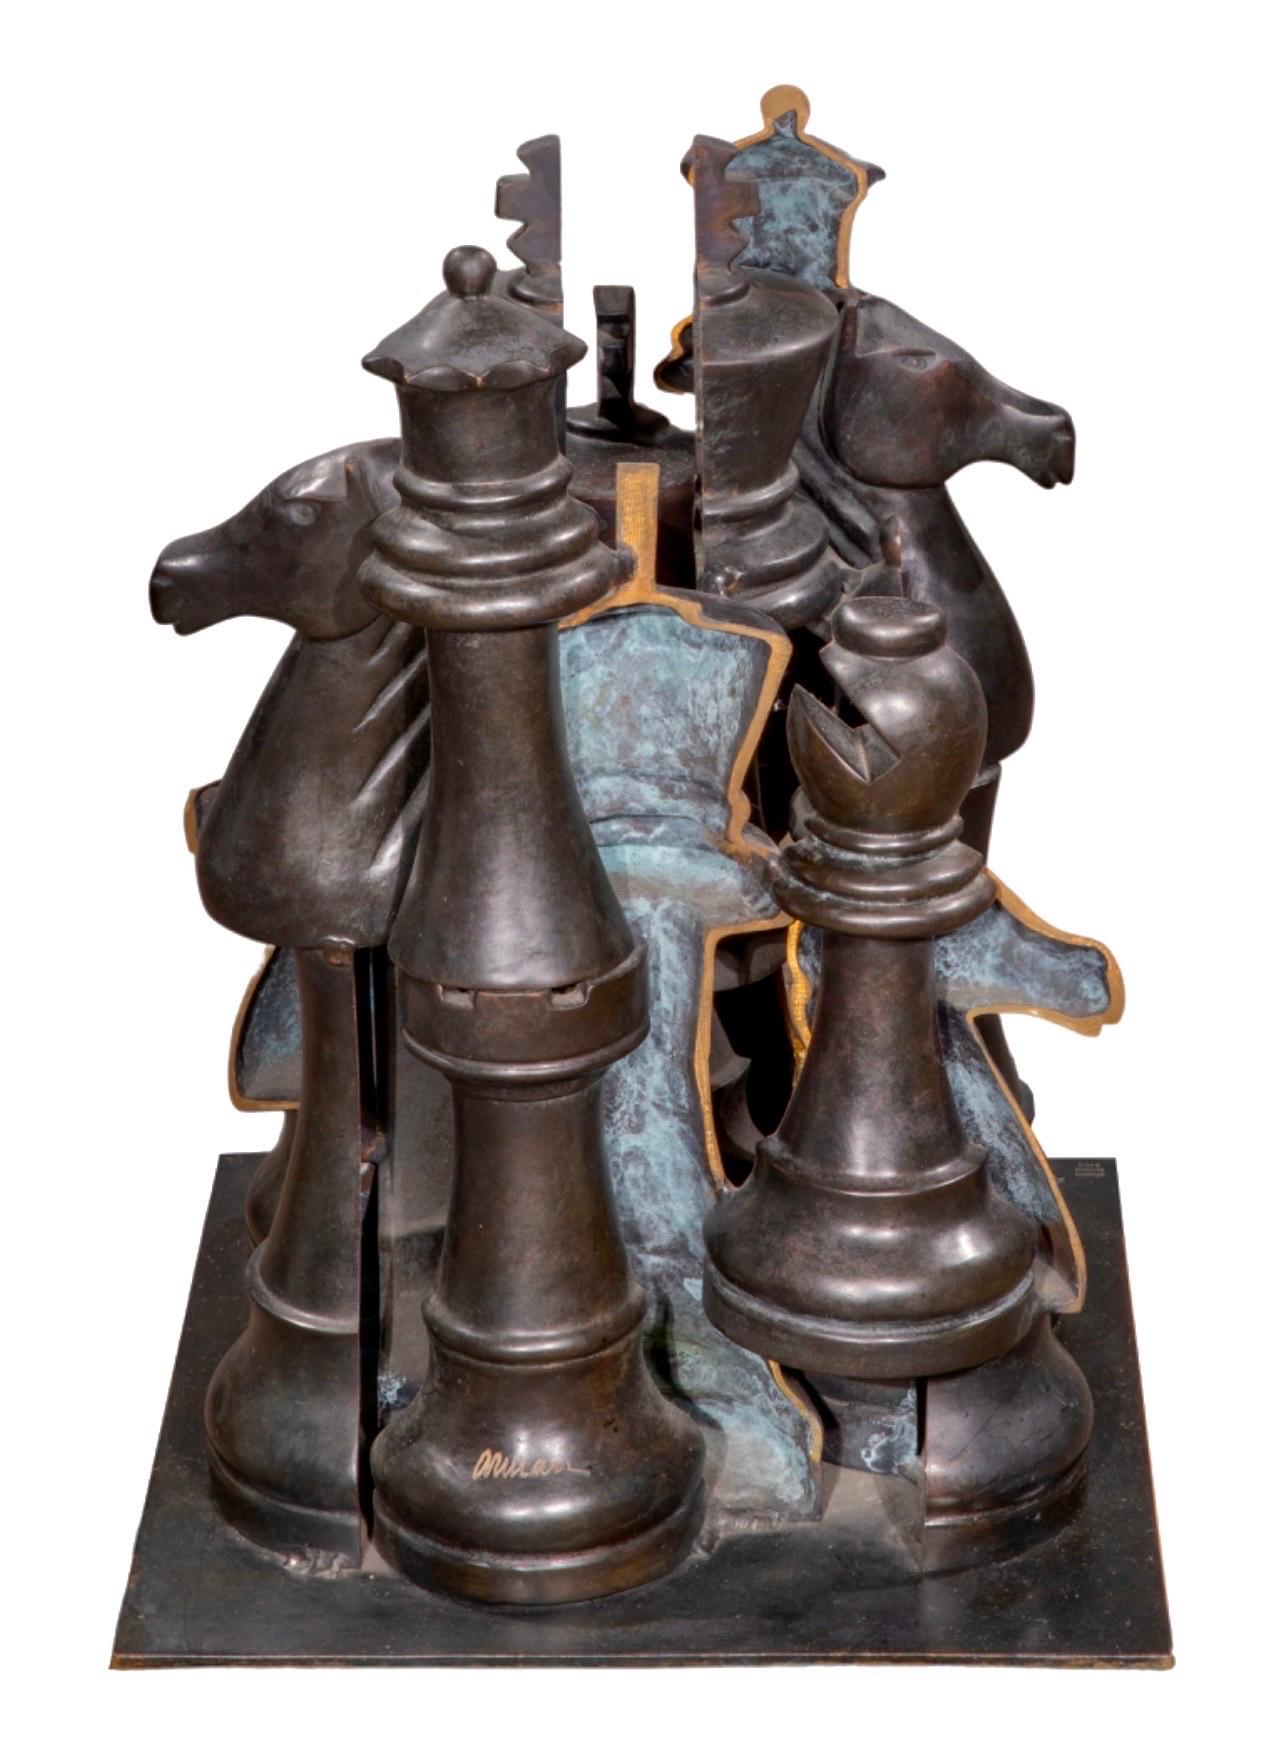 Arman, franco-américain (1928-2005)
Gambit  (Pièces d'échecs)
Sculpture en bronze coulé patiné
Signature incisée près du bord inférieur, 48/70 avec 
marque de fonderie "Bronze Romain & Fils" imprimée  
Dimensions : (approximatif) 17 X 13 X 12